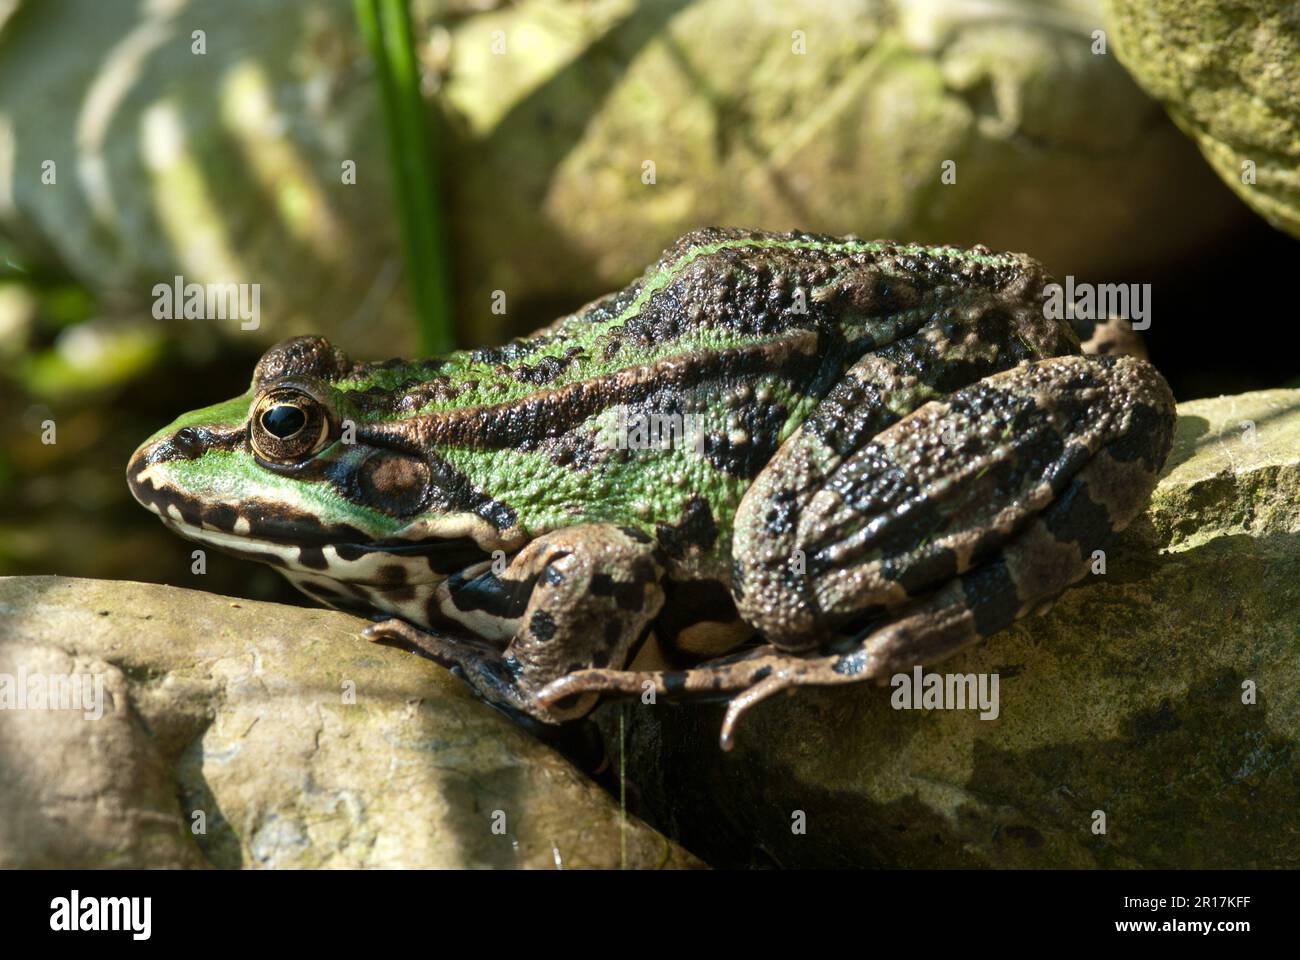 La rana commestibile (Pelophylax kl. Esculentus) è una specie di rana comune europea, nota anche come rana comune o rana verde Foto Stock